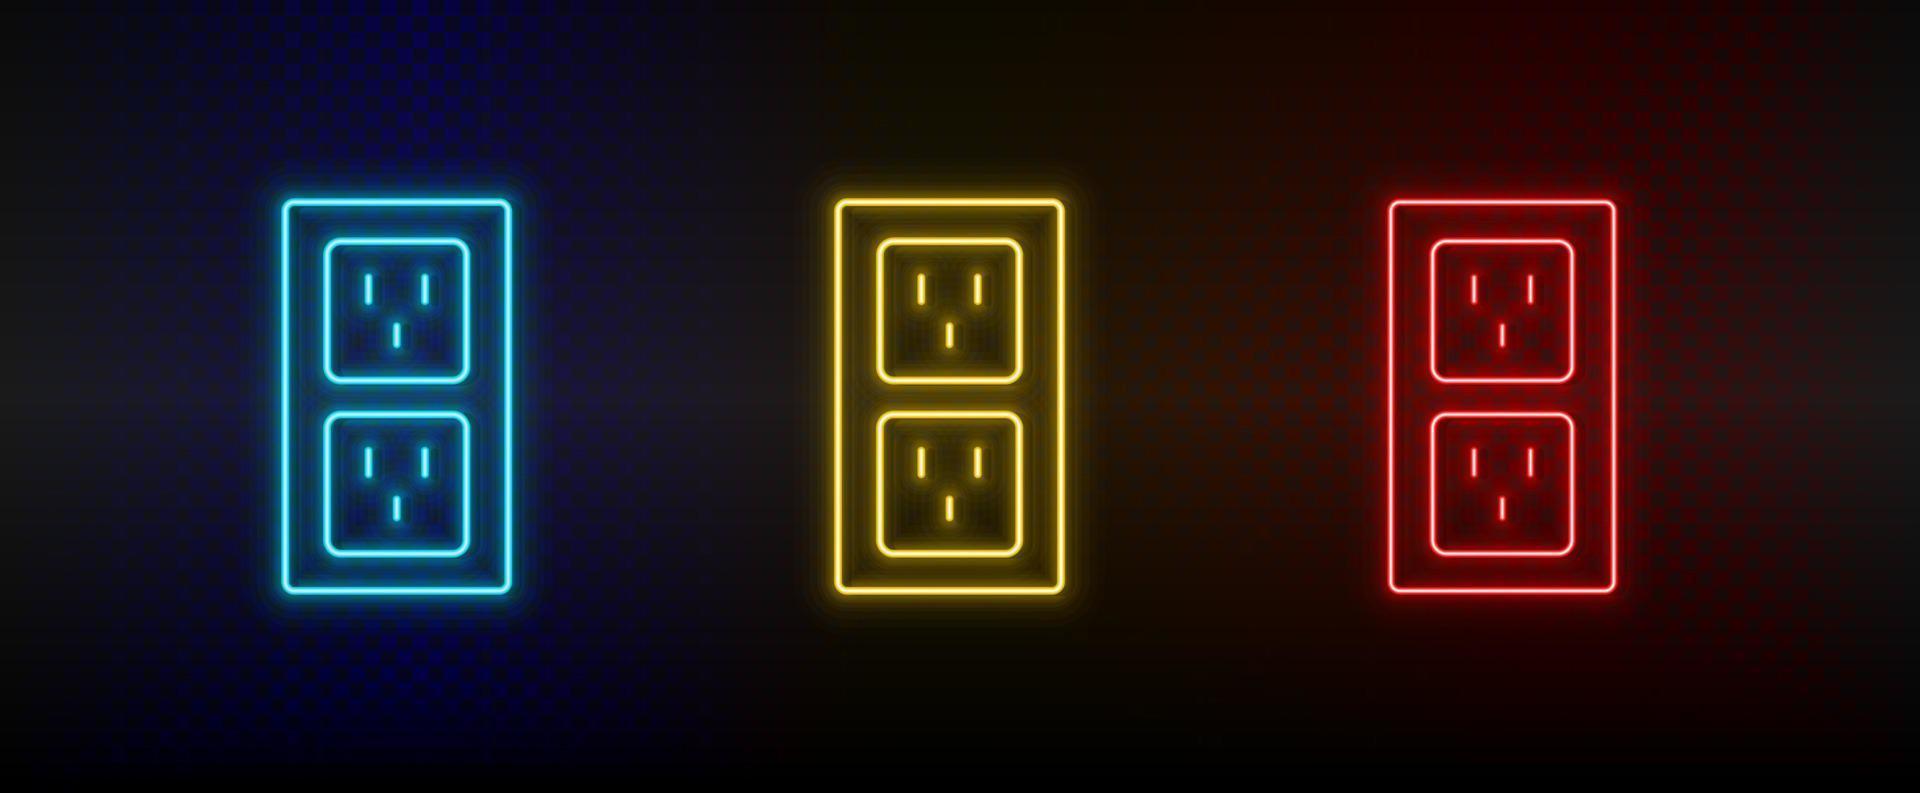 neon ikon uppsättning anslutningar. uppsättning av röd, blå, gul neon vektor ikon på genomskinlighet mörk bakgrund